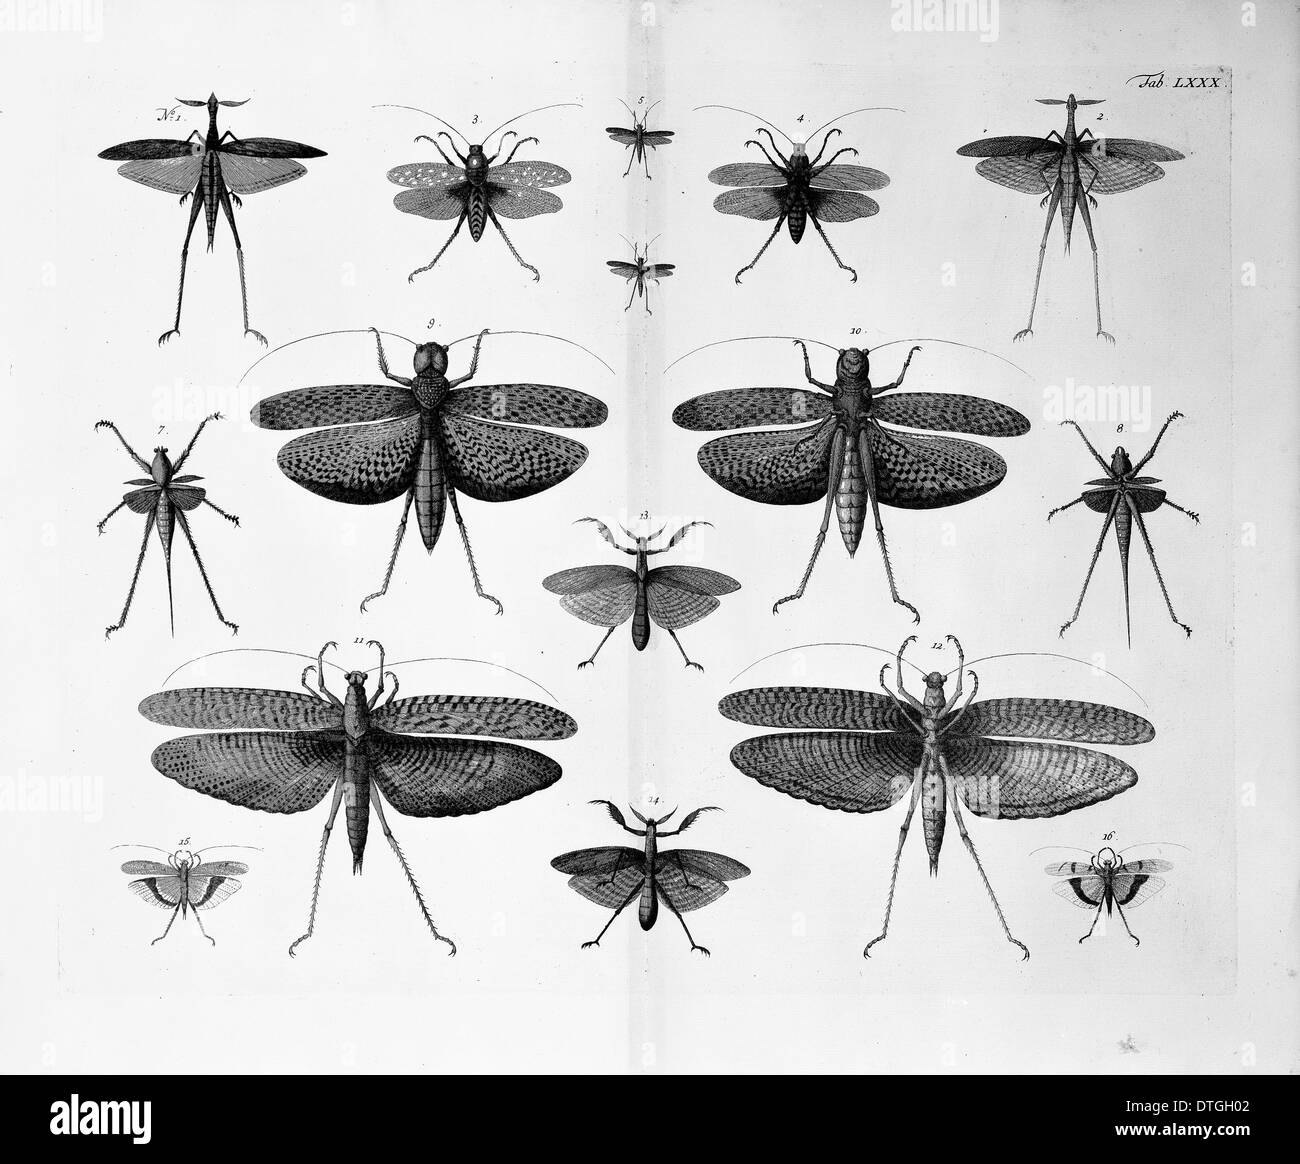 Ilustración de insectos Foto de stock